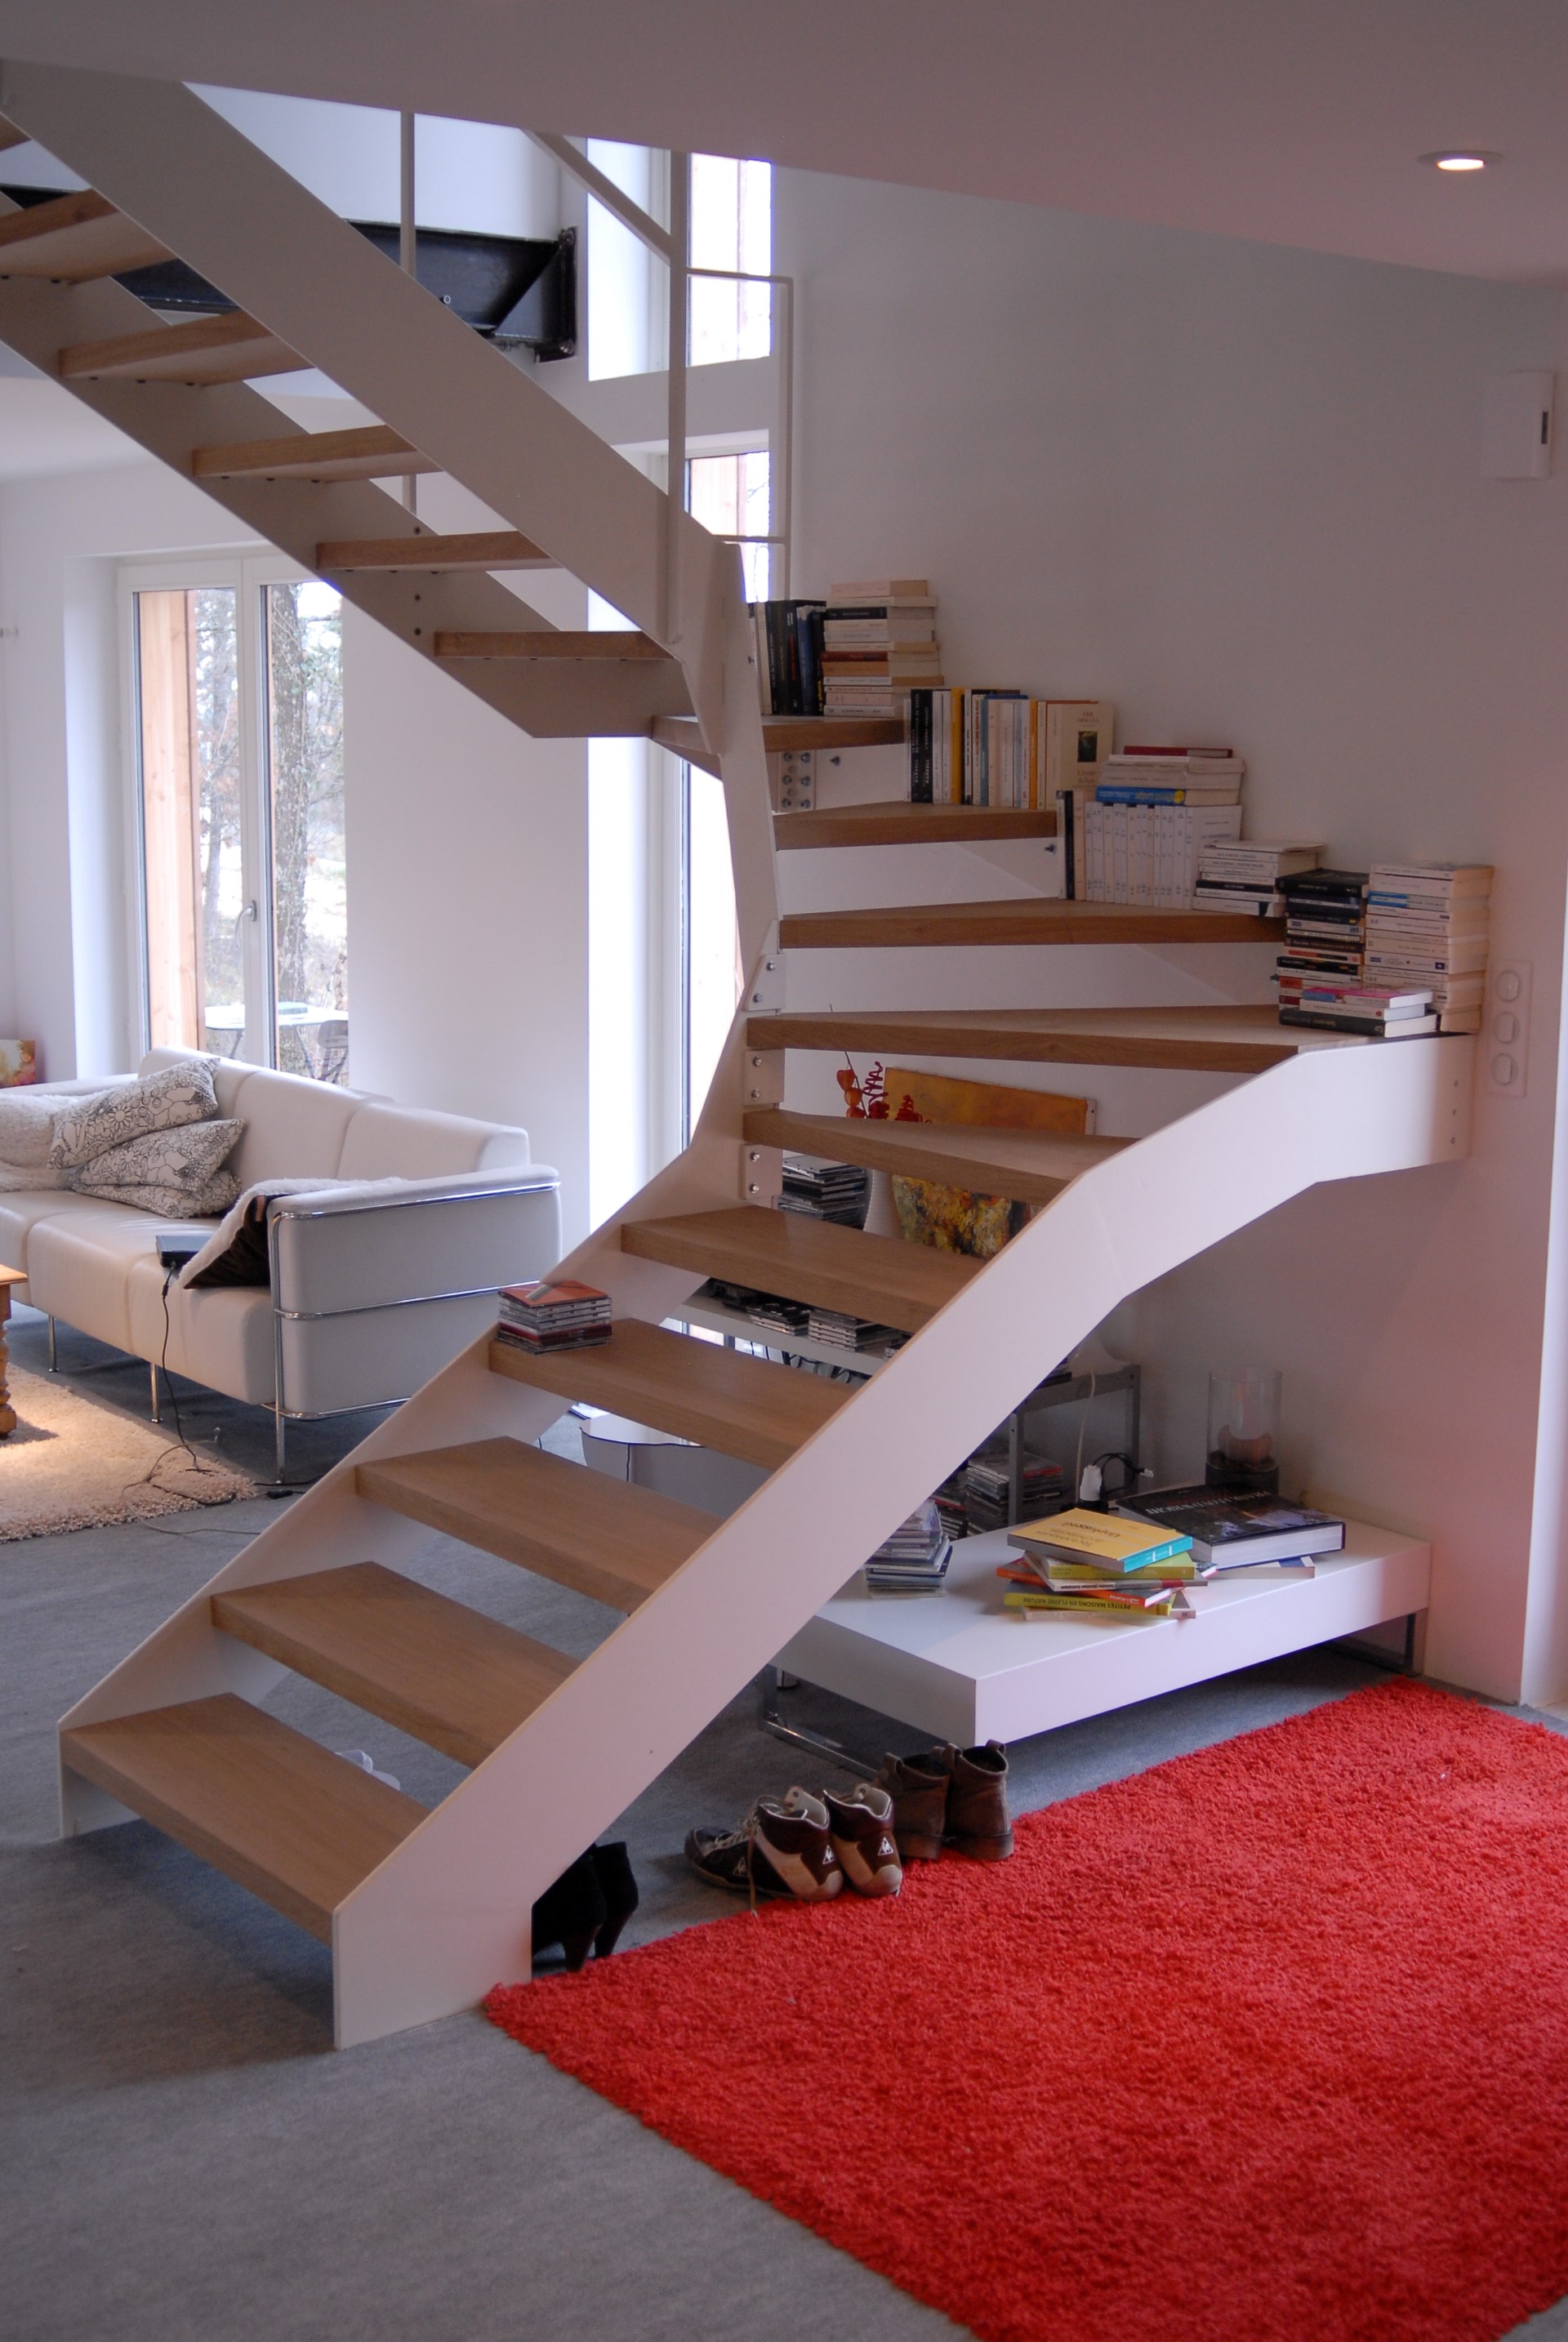 Escaliers - Mixte bois/métal